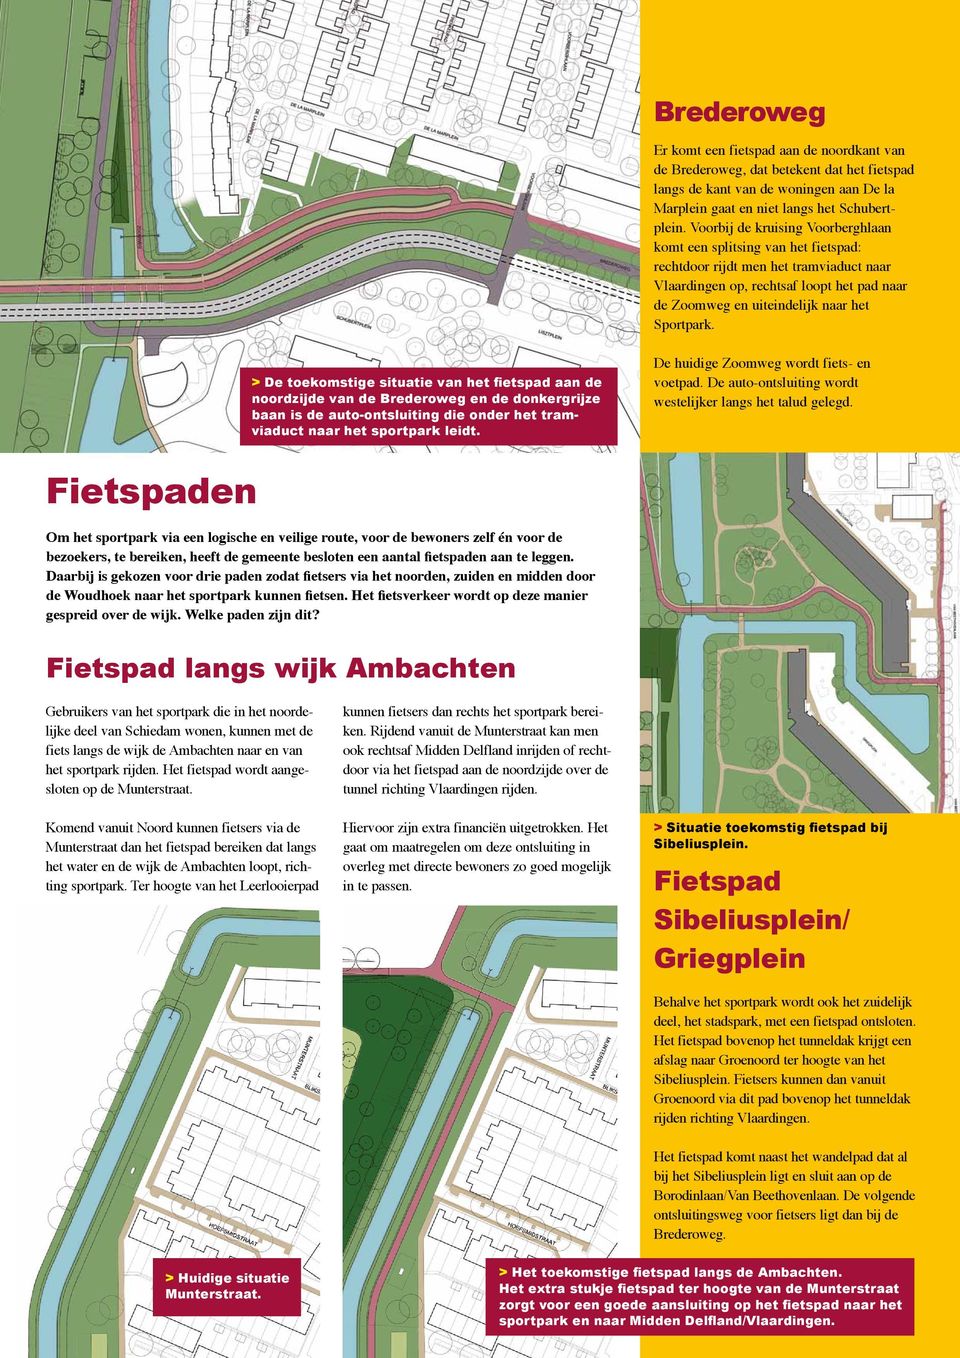 Sportpark. > De toekomstige situatie van het fietspad aan de noordzijde van de Brederoweg en de donkergrijze baan is de auto-ontsluiting die onder het tramviaduct naar het sportpark leidt.